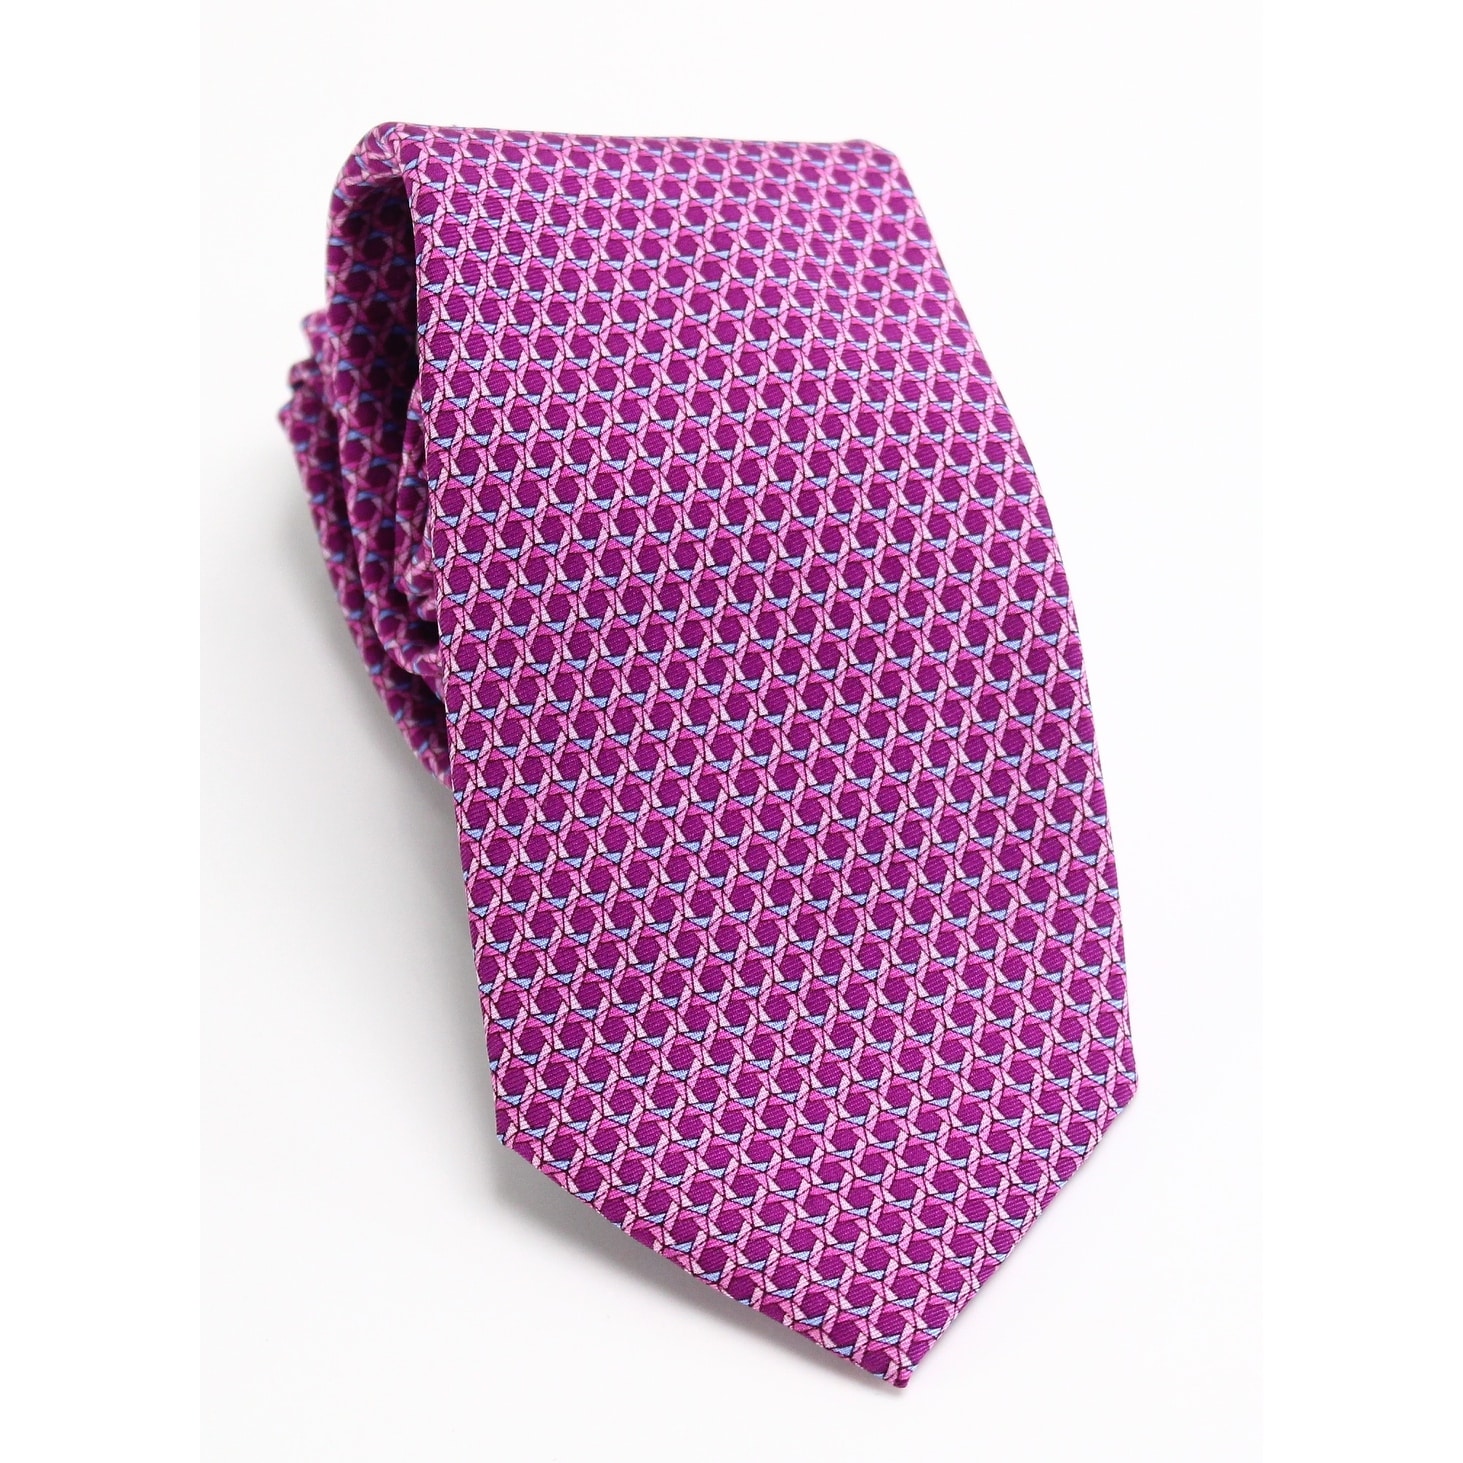 michael kors pink tie